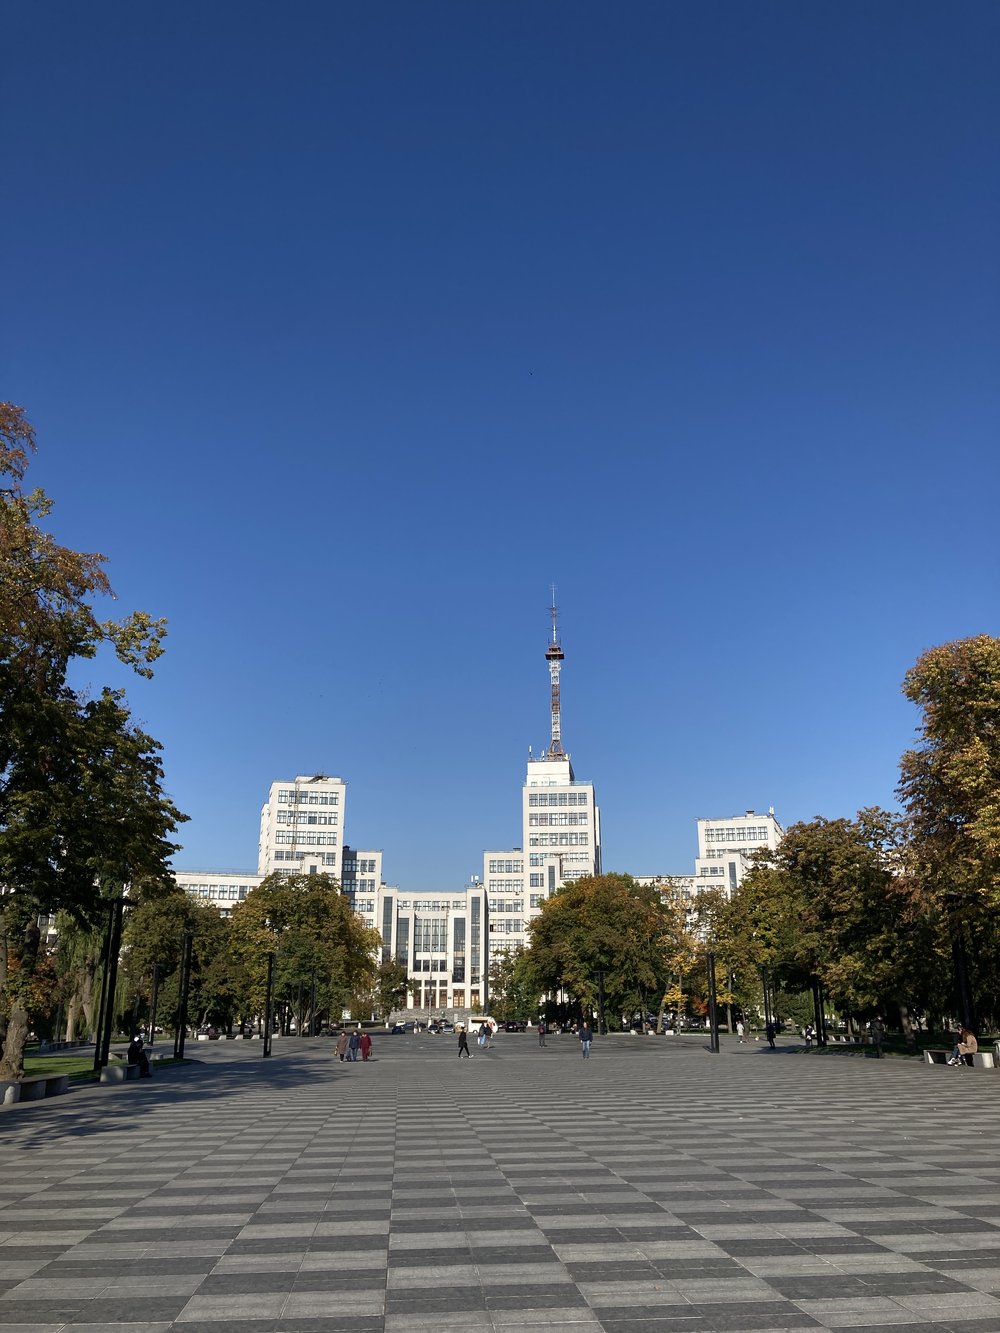 Kharkiv / Ukraine, September 2021